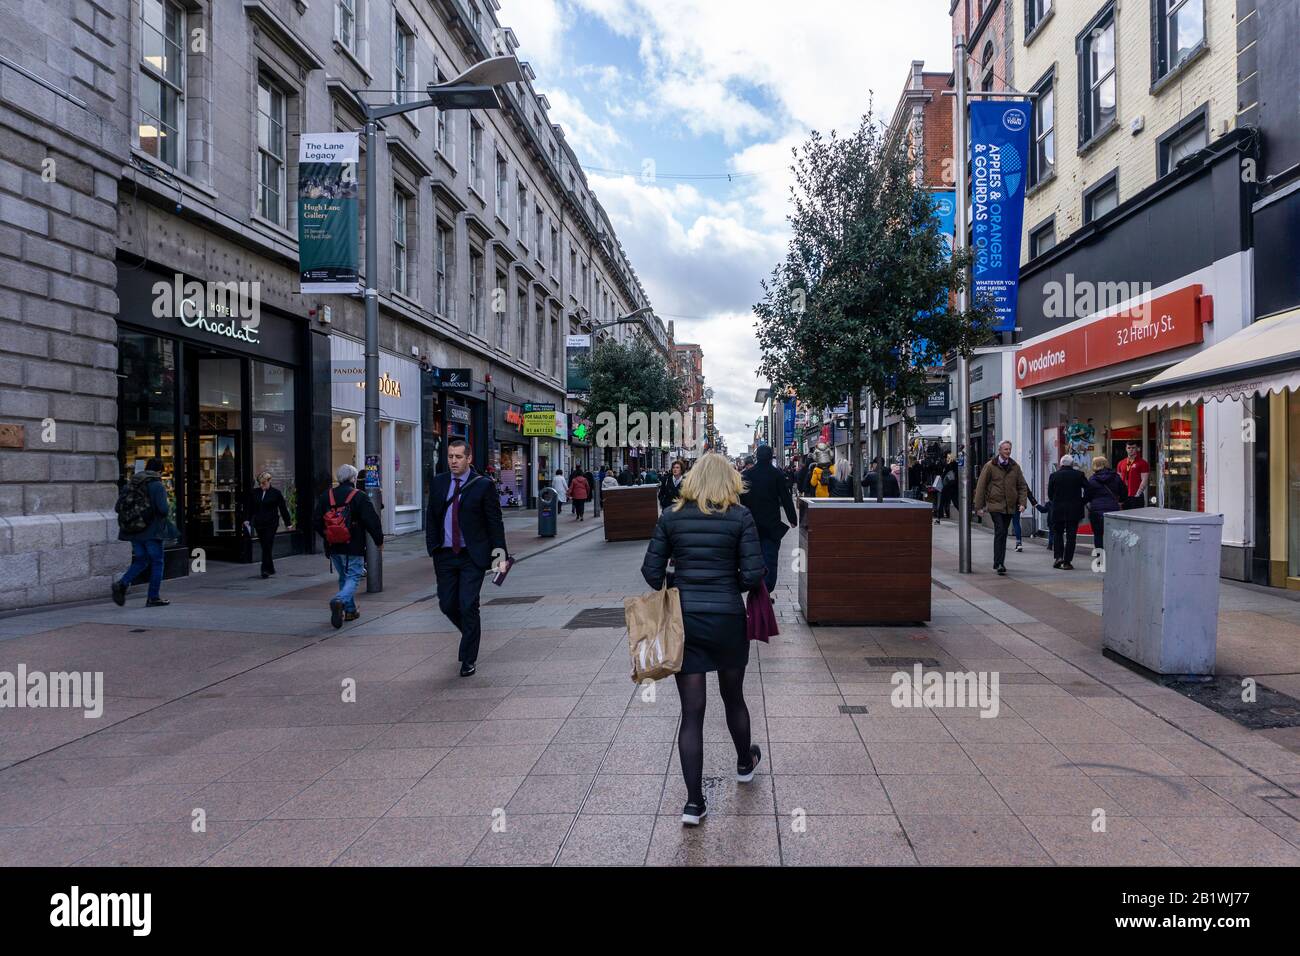 Le sommet de Henry Street, en Irlande, l'une des rues les plus fréquentées de Dublin, vue de O'Connell Street Banque D'Images